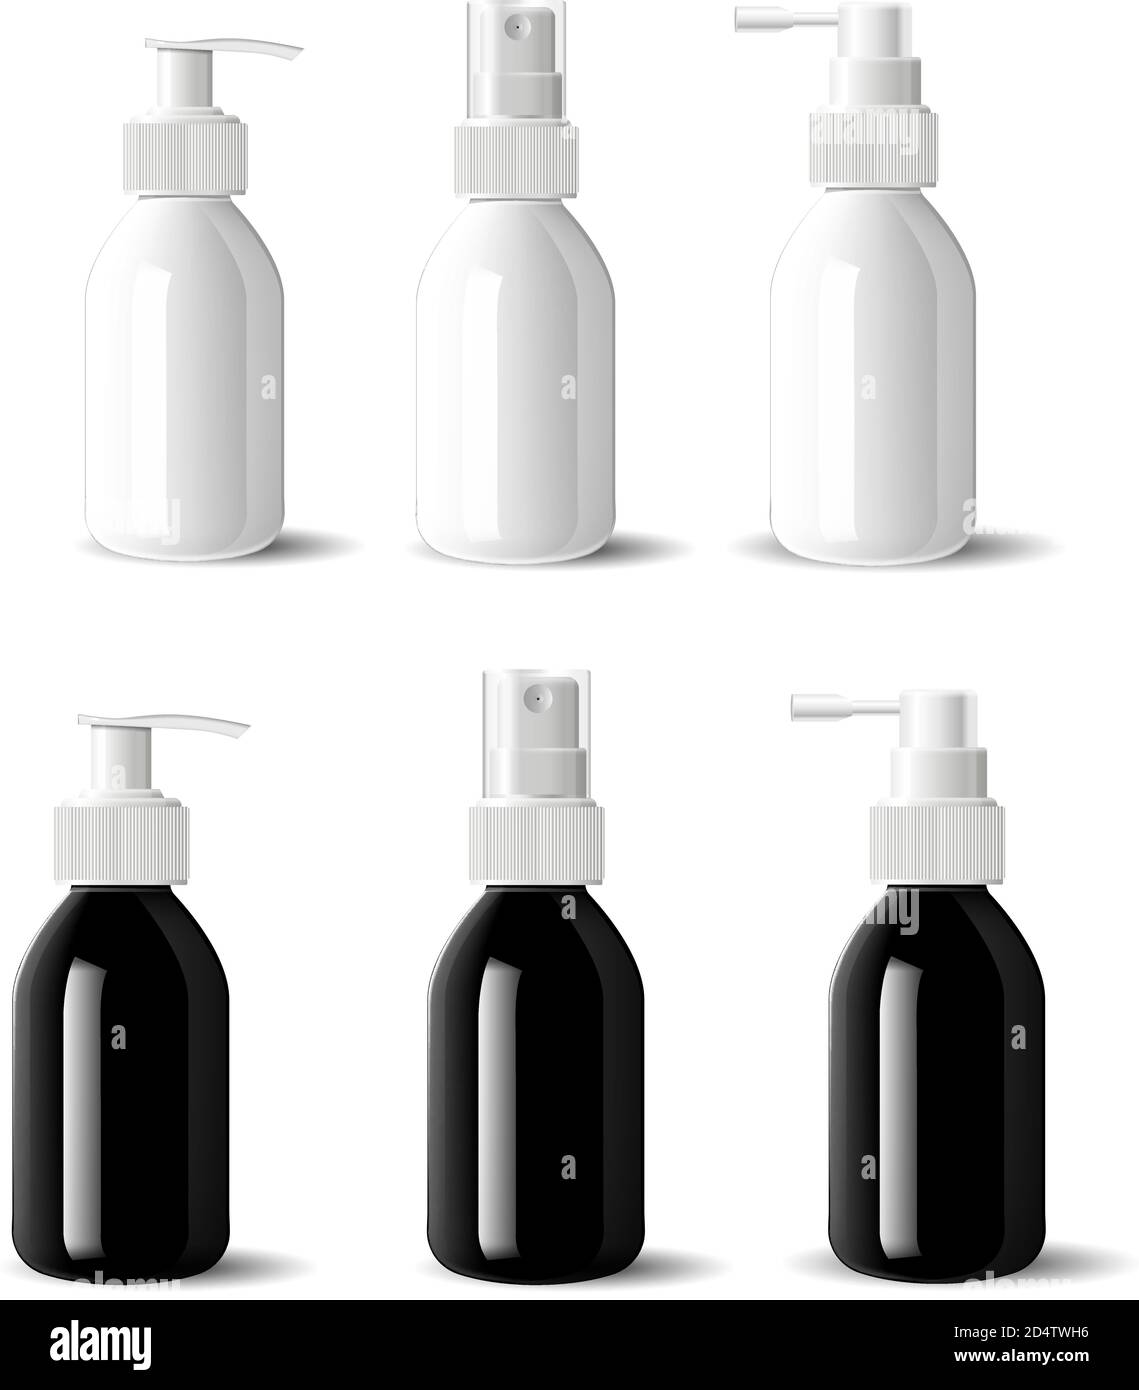 Flaconi per uso medico con tappi spray dispenser. Contenitori aerosol in  vetro nero e bianco lucido, dispenser a pompa per cosmetici idratanti  liquidi. 3s rea Immagine e Vettoriale - Alamy